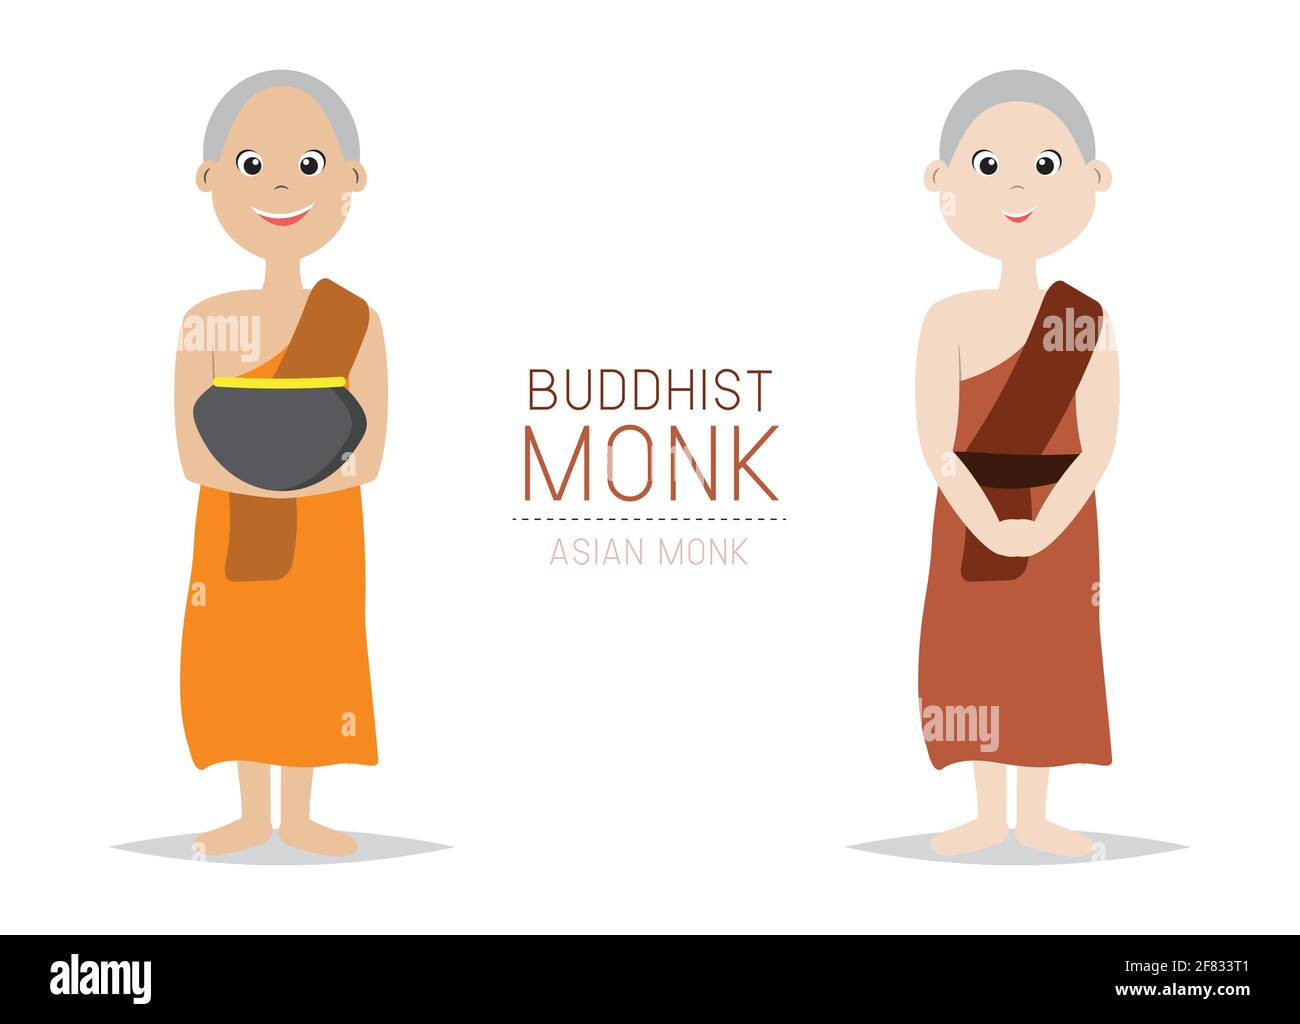 Vektor Buddhistischer Mönch Asiatischer Stil; Zeichentrickfigur-Design. Stock Vektor